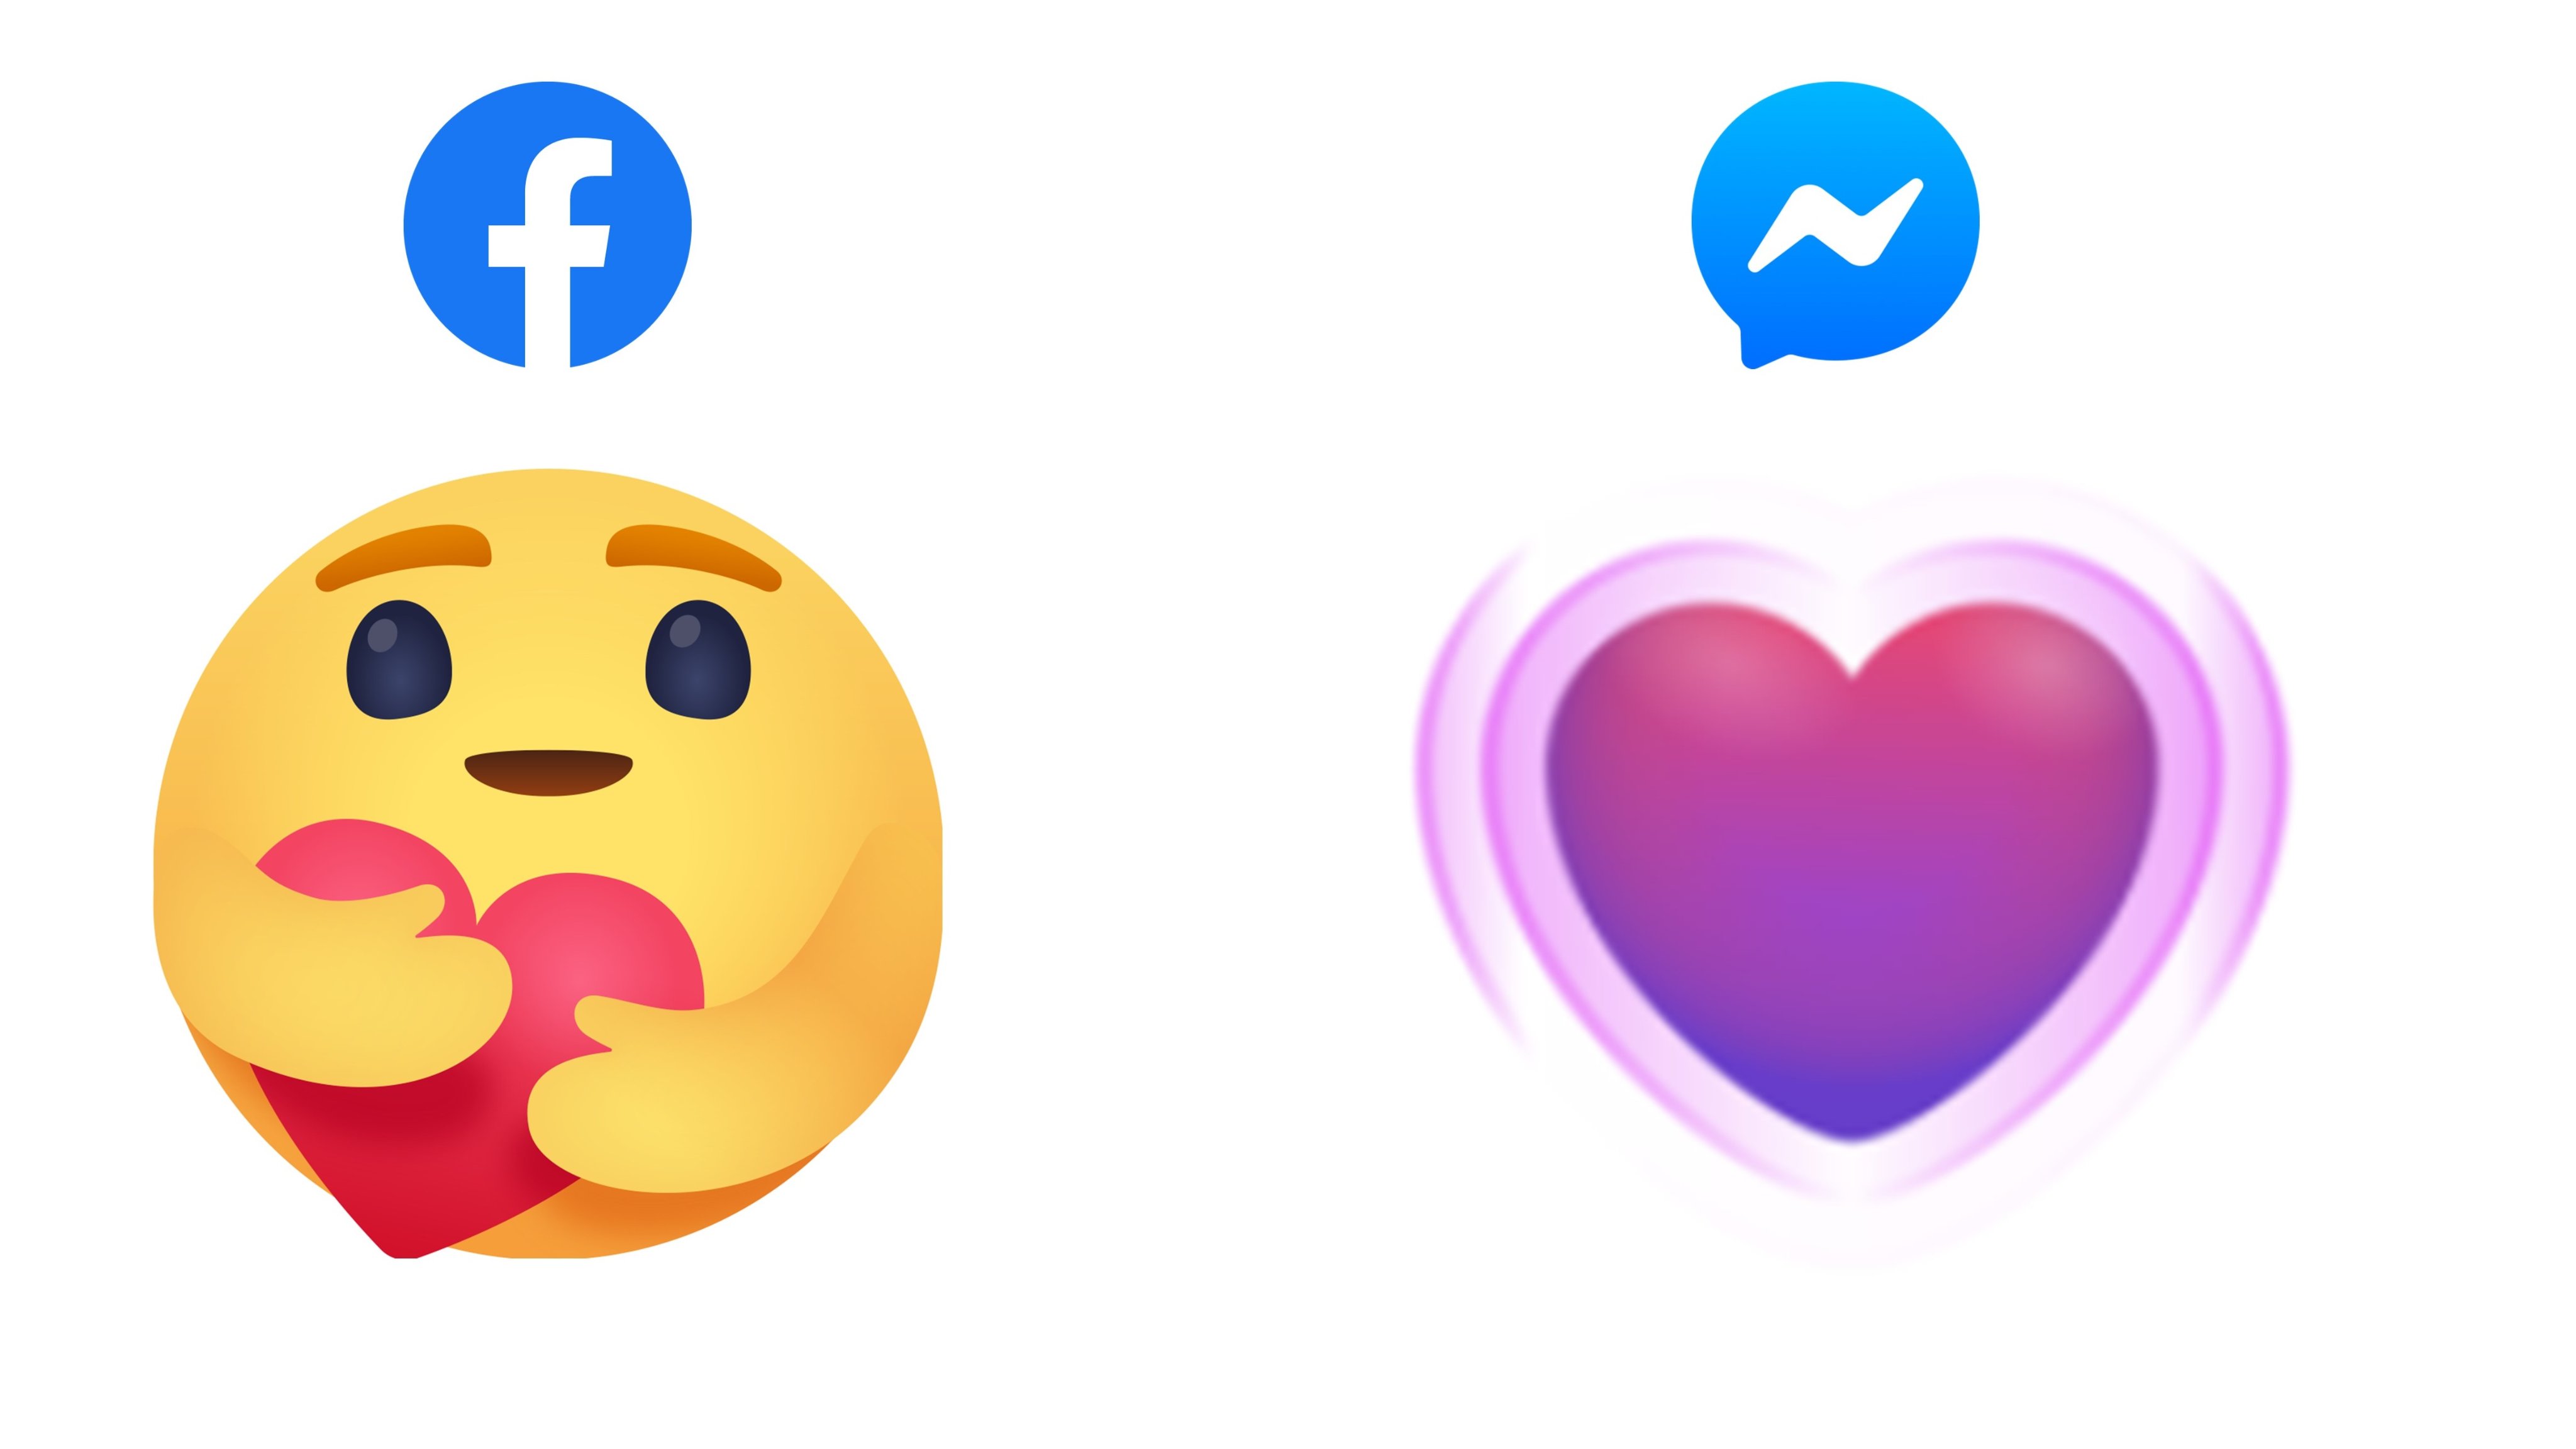 fb emoji meaning